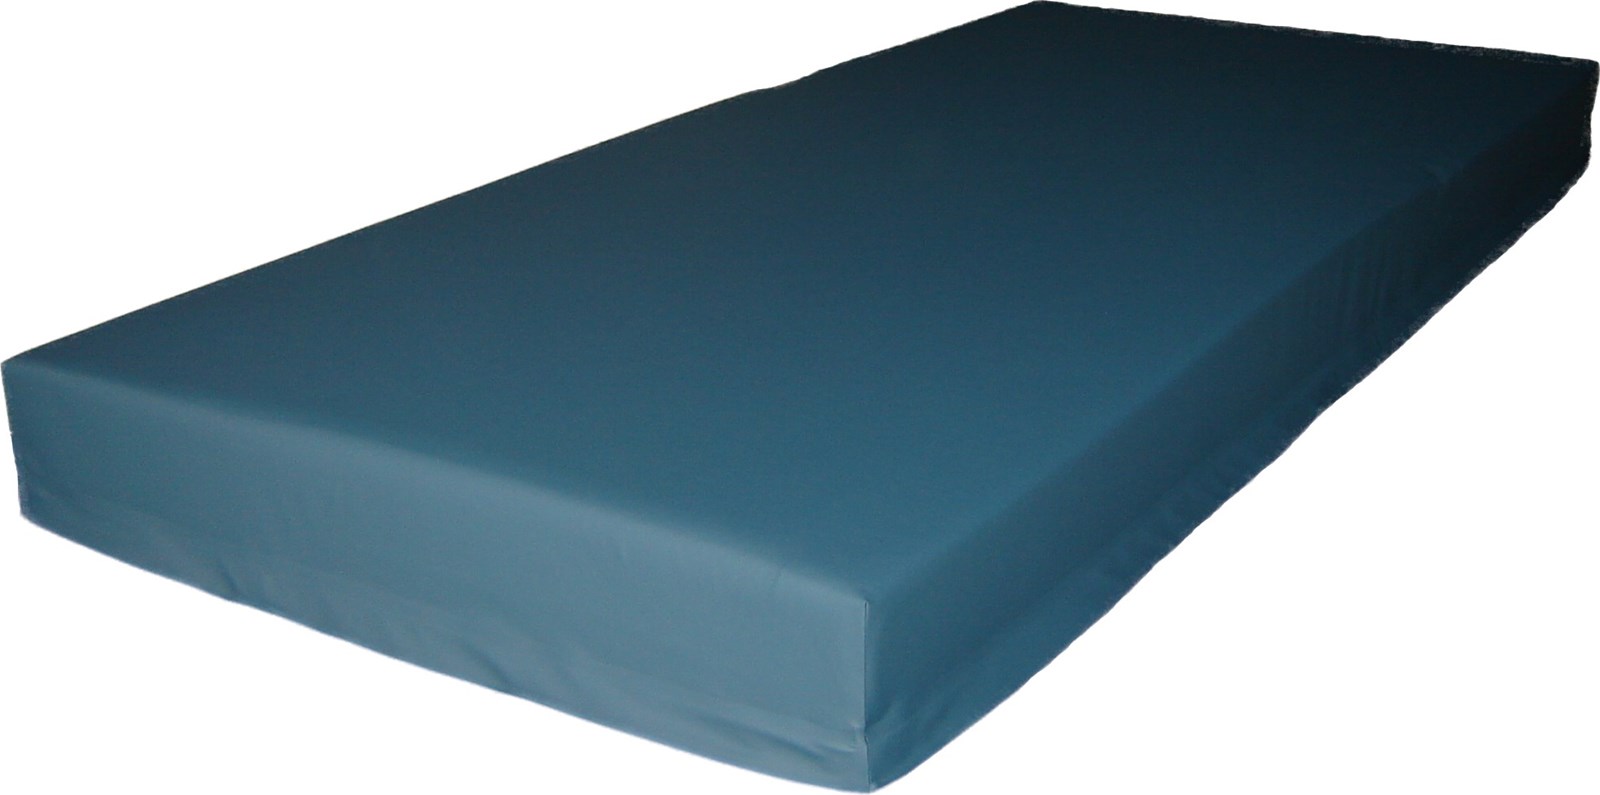 bunk bed zippered mattress cover